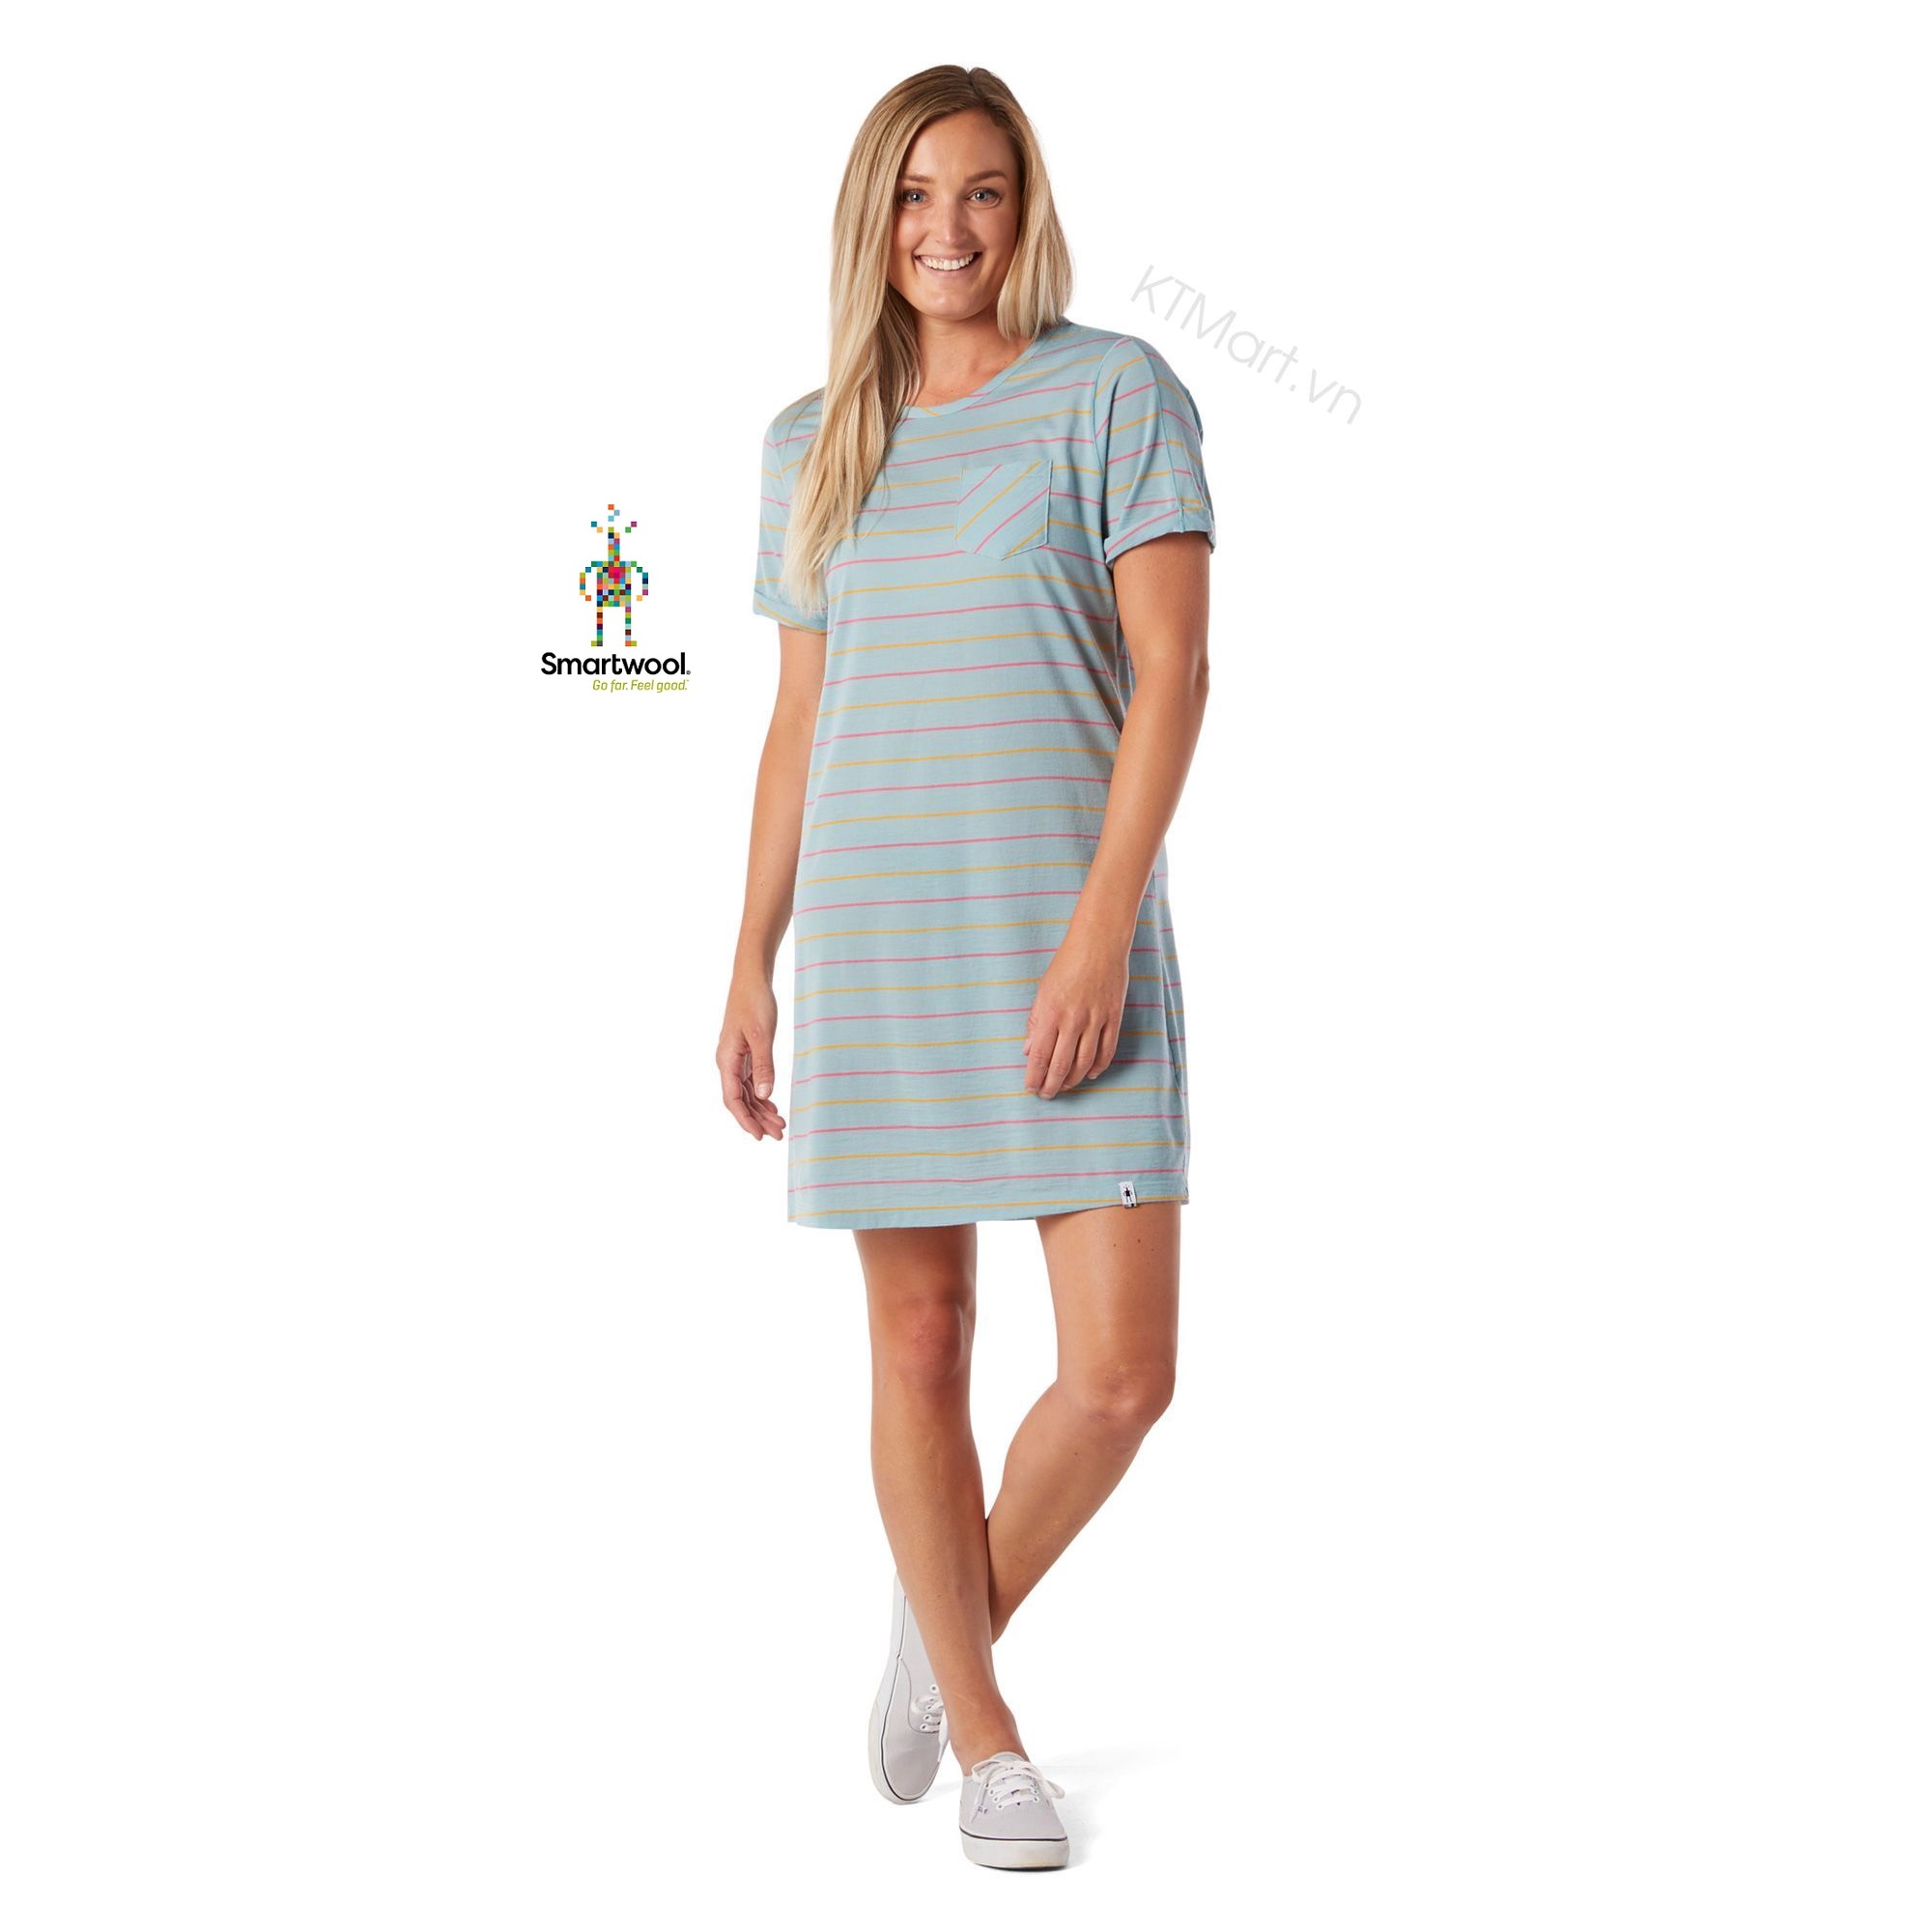 Smartwool Women’s Merino 150 Short Sleeve Dress SW015122 Smartwool size M